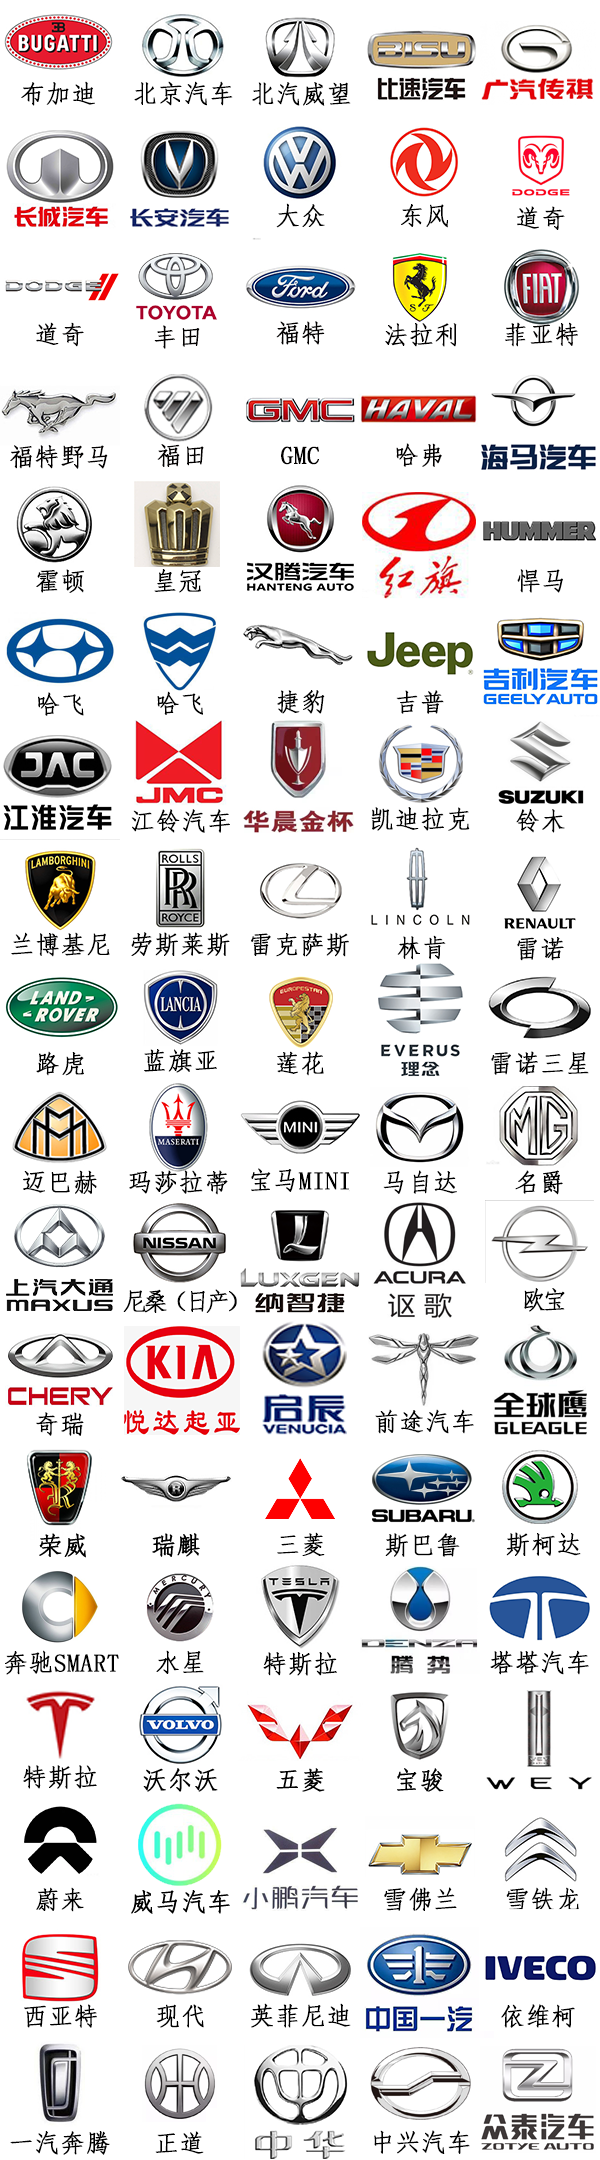 常见车标logo(排序仅根据品牌首字母排序,并无其它含义)